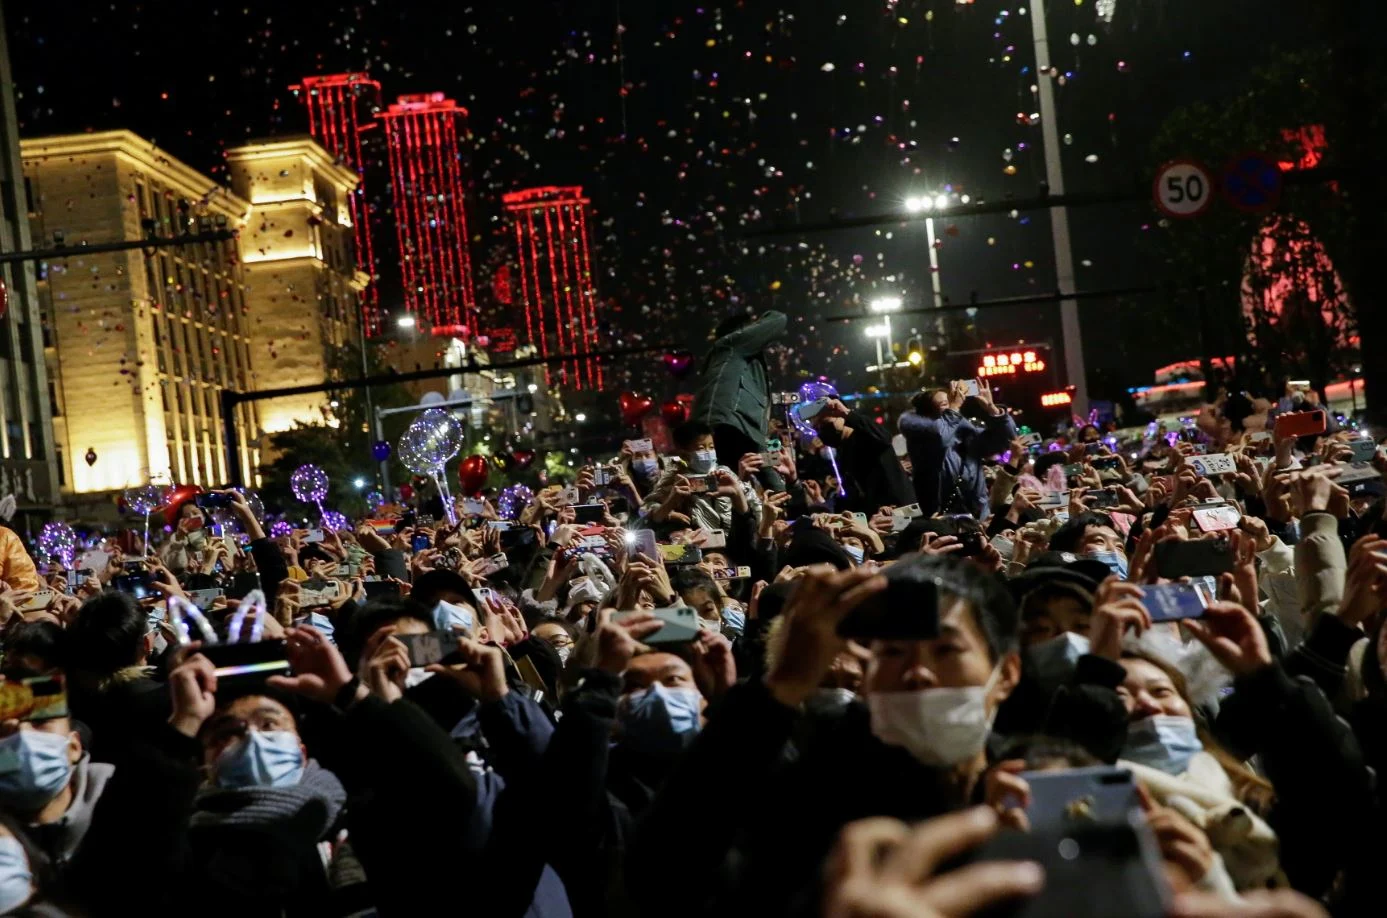 חגיגות הסילבסטר בווהאן, שבסין - העיר שבה התפרץ נגיף הקורונה